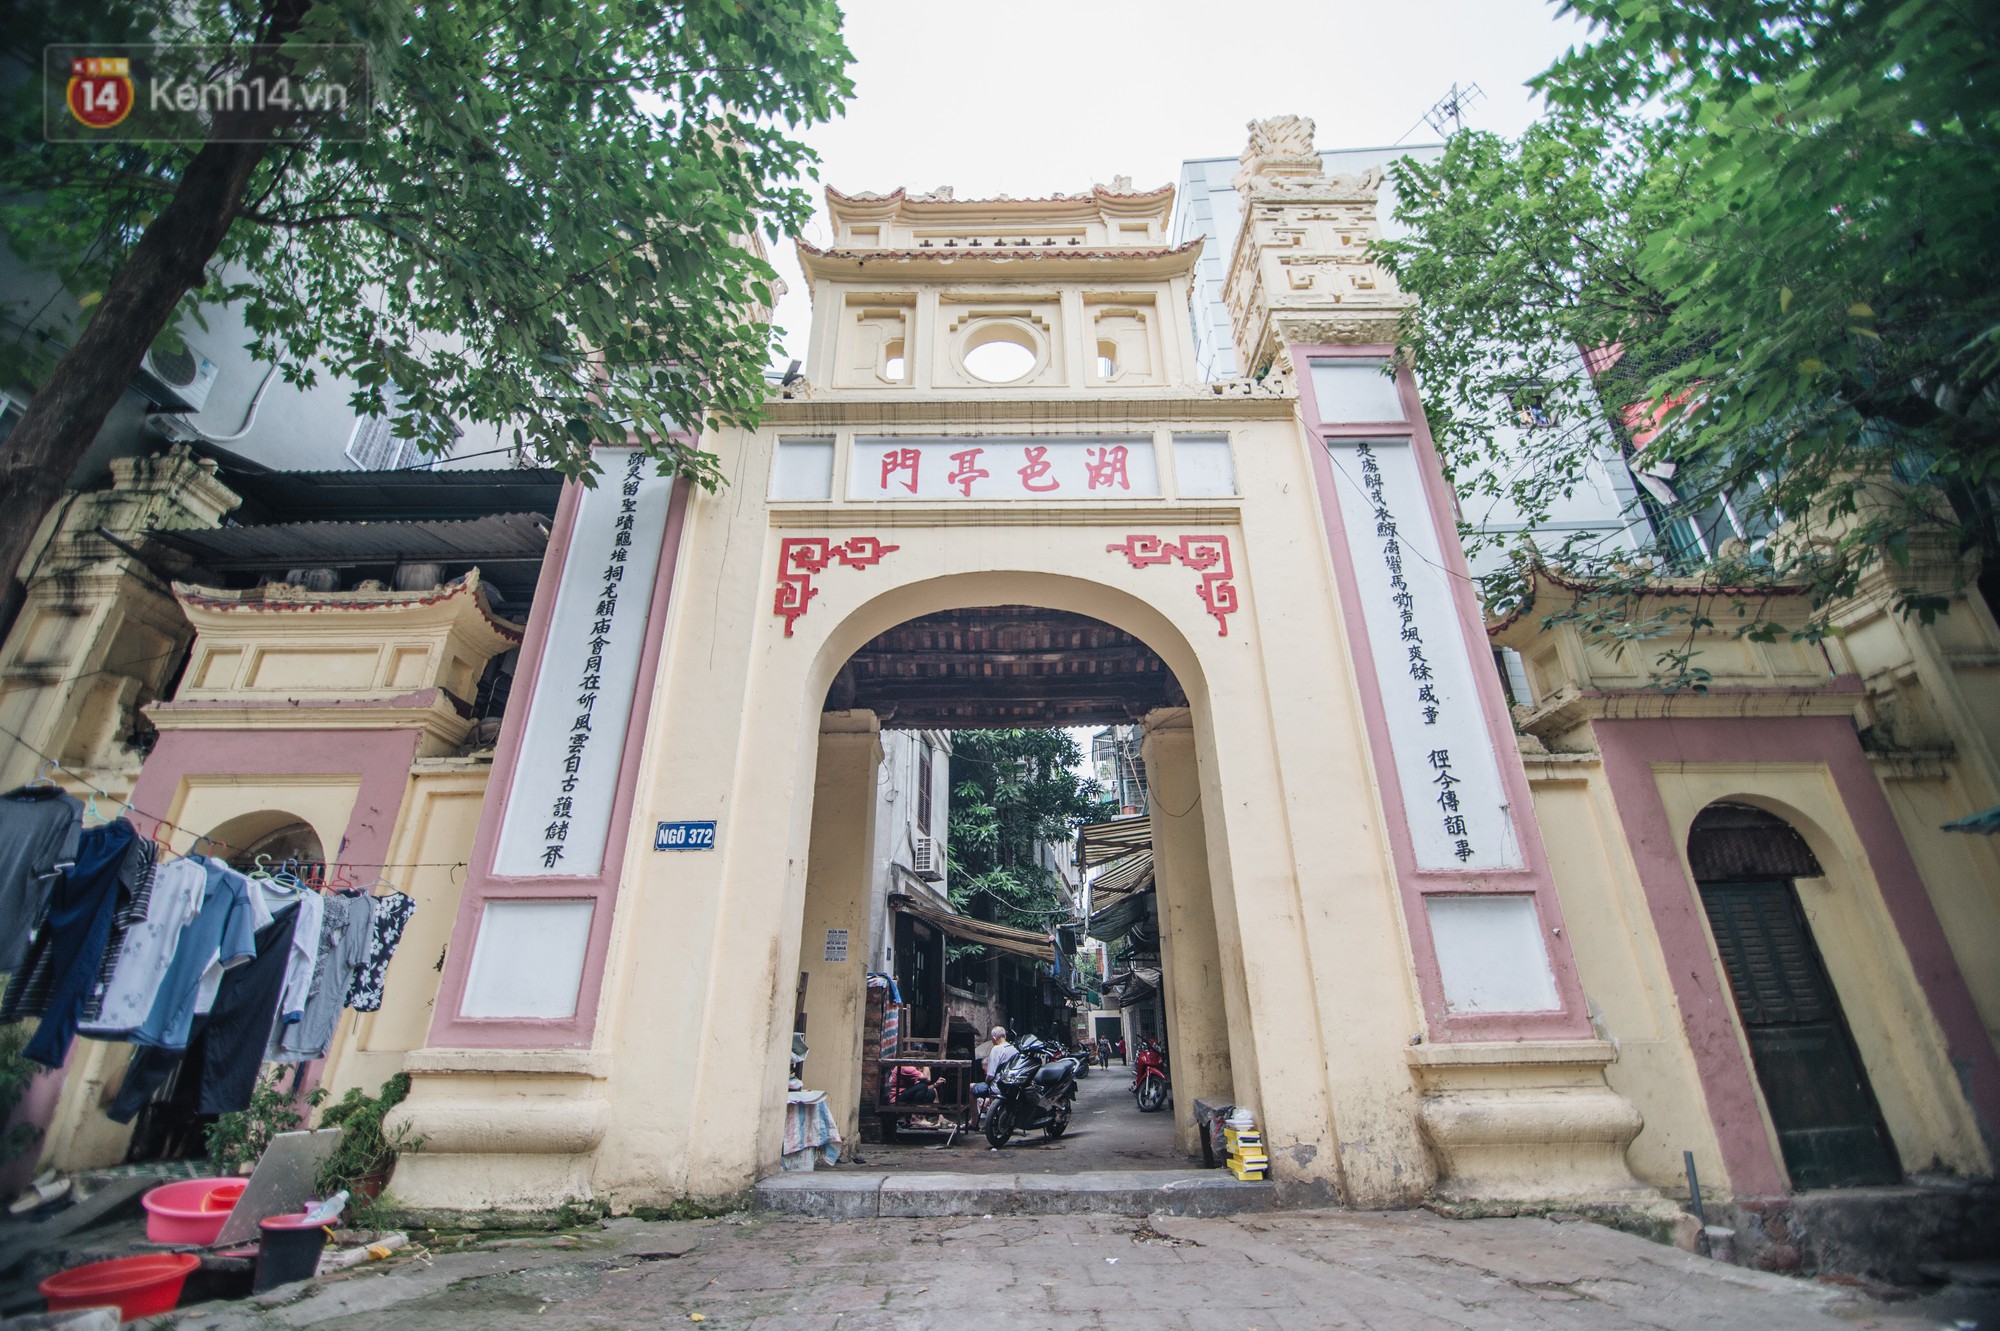 Chuyện về một con phố có nhiều cổng làng nhất Hà Nội: Đưa chân qua cổng phải tôn trọng nếp làng - Ảnh 12.